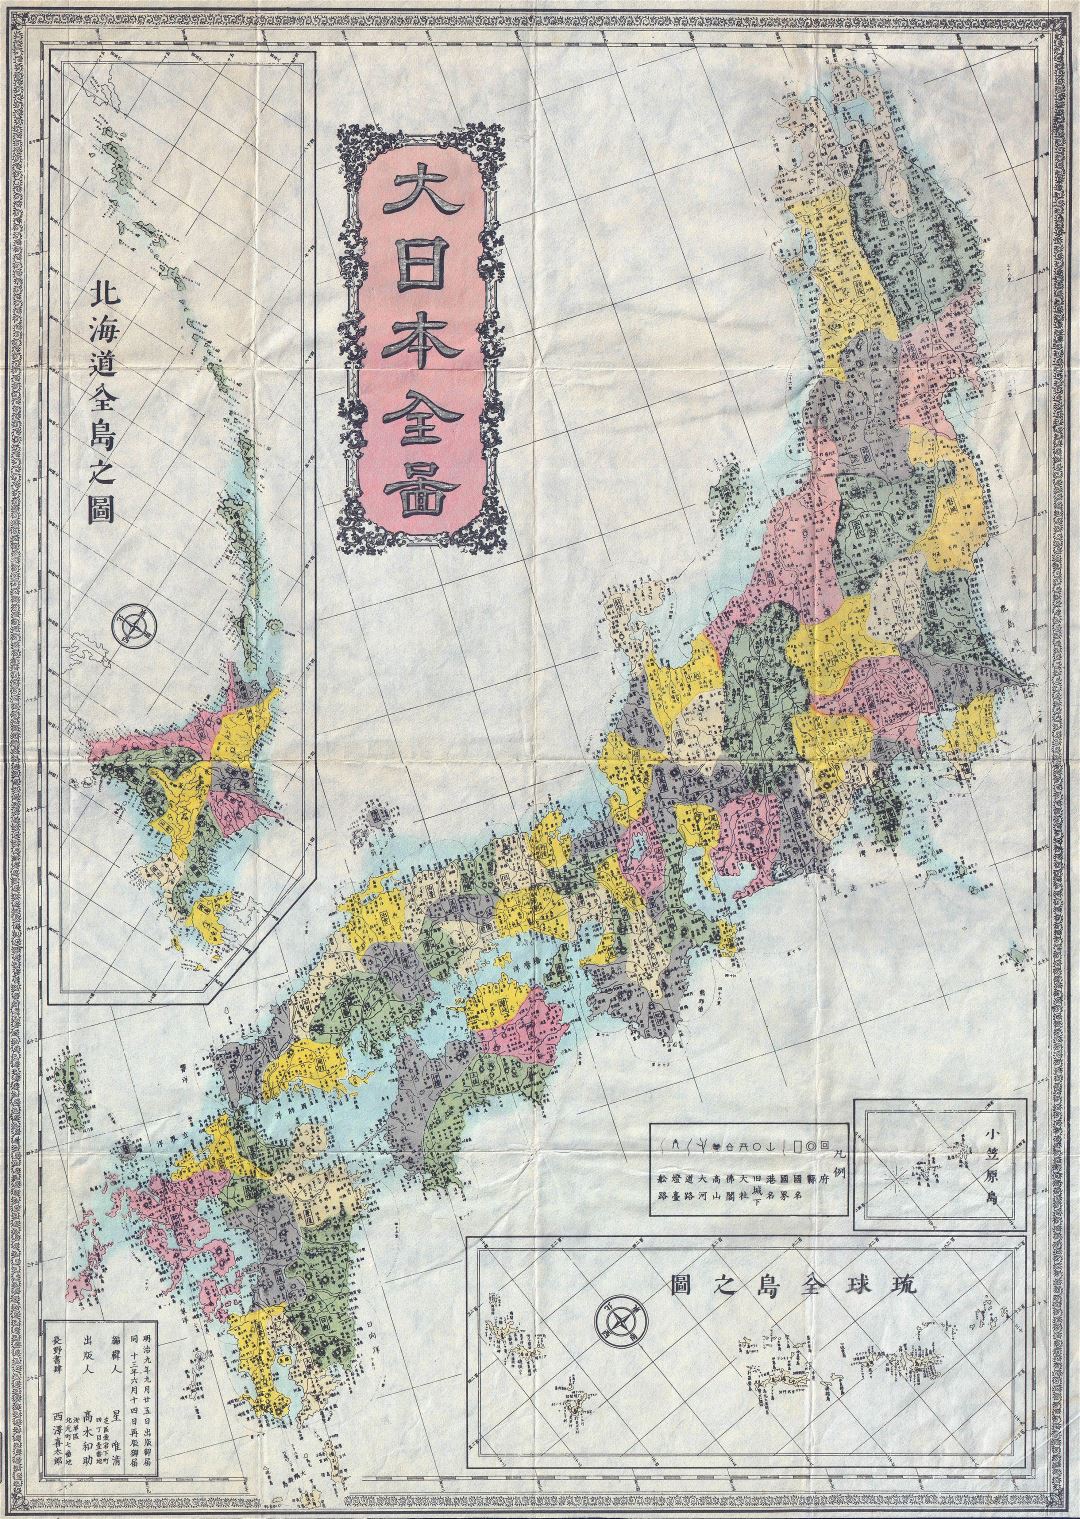 Grande detallado antiguo mapa administrativo de Japón en japonés - 1880